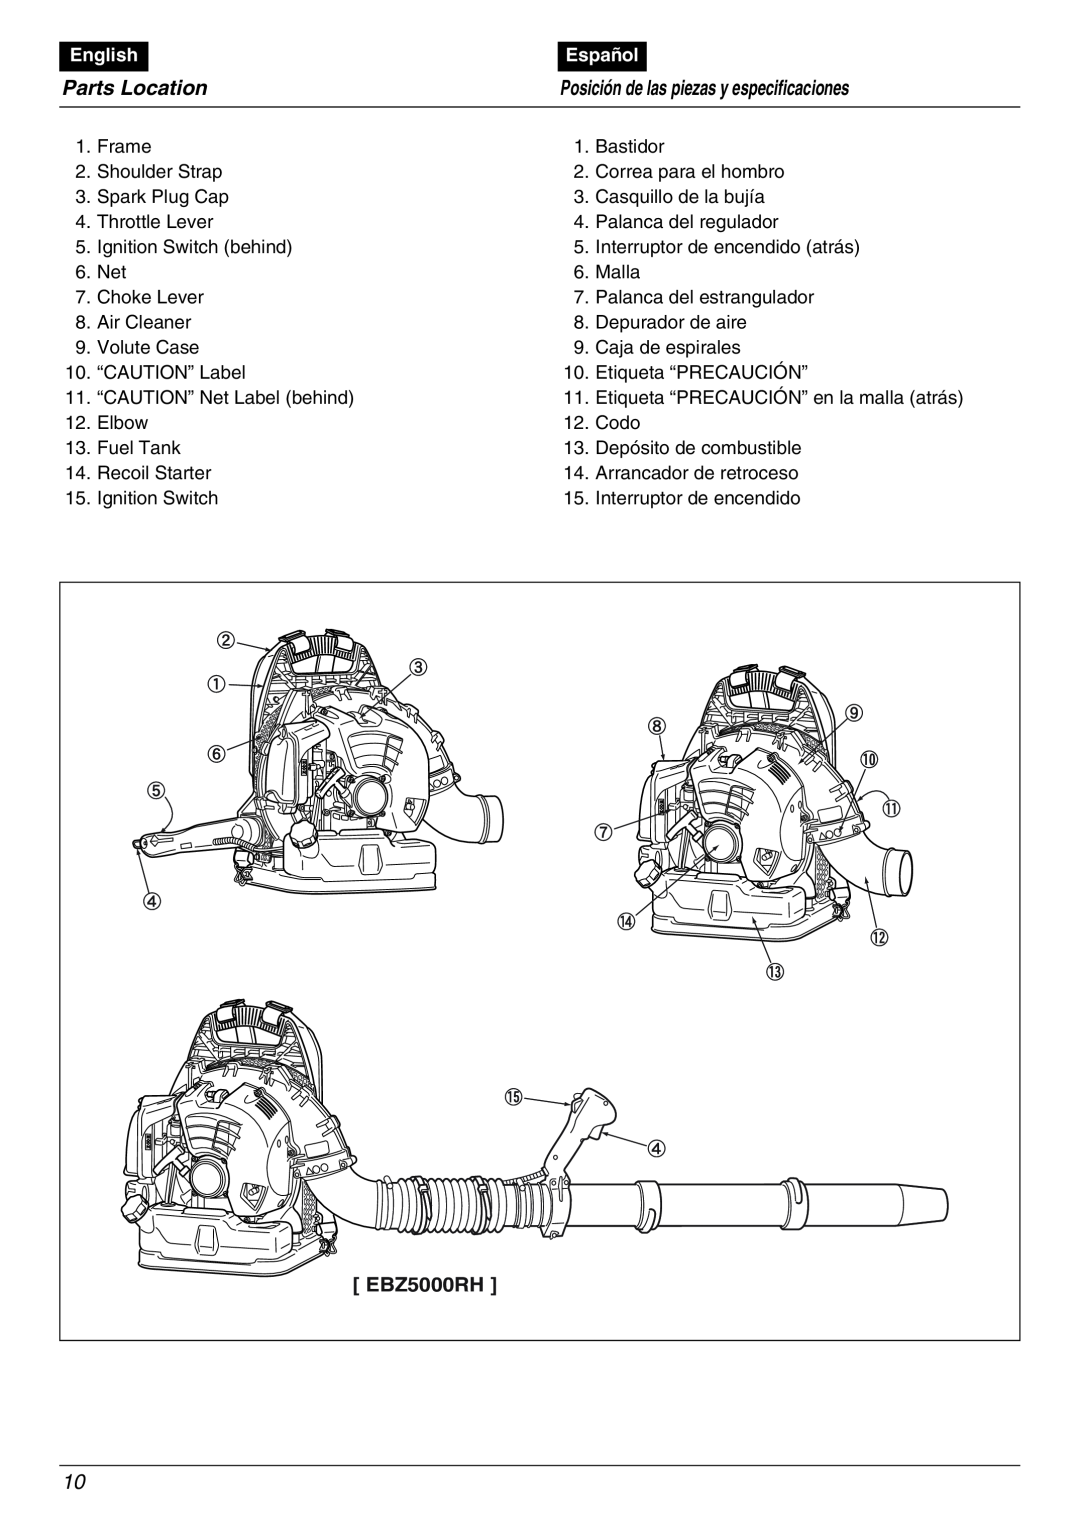 RedMax manual Parts Location, Posición de las piezas y especificaciones, EBZ5000RH, English, Español 